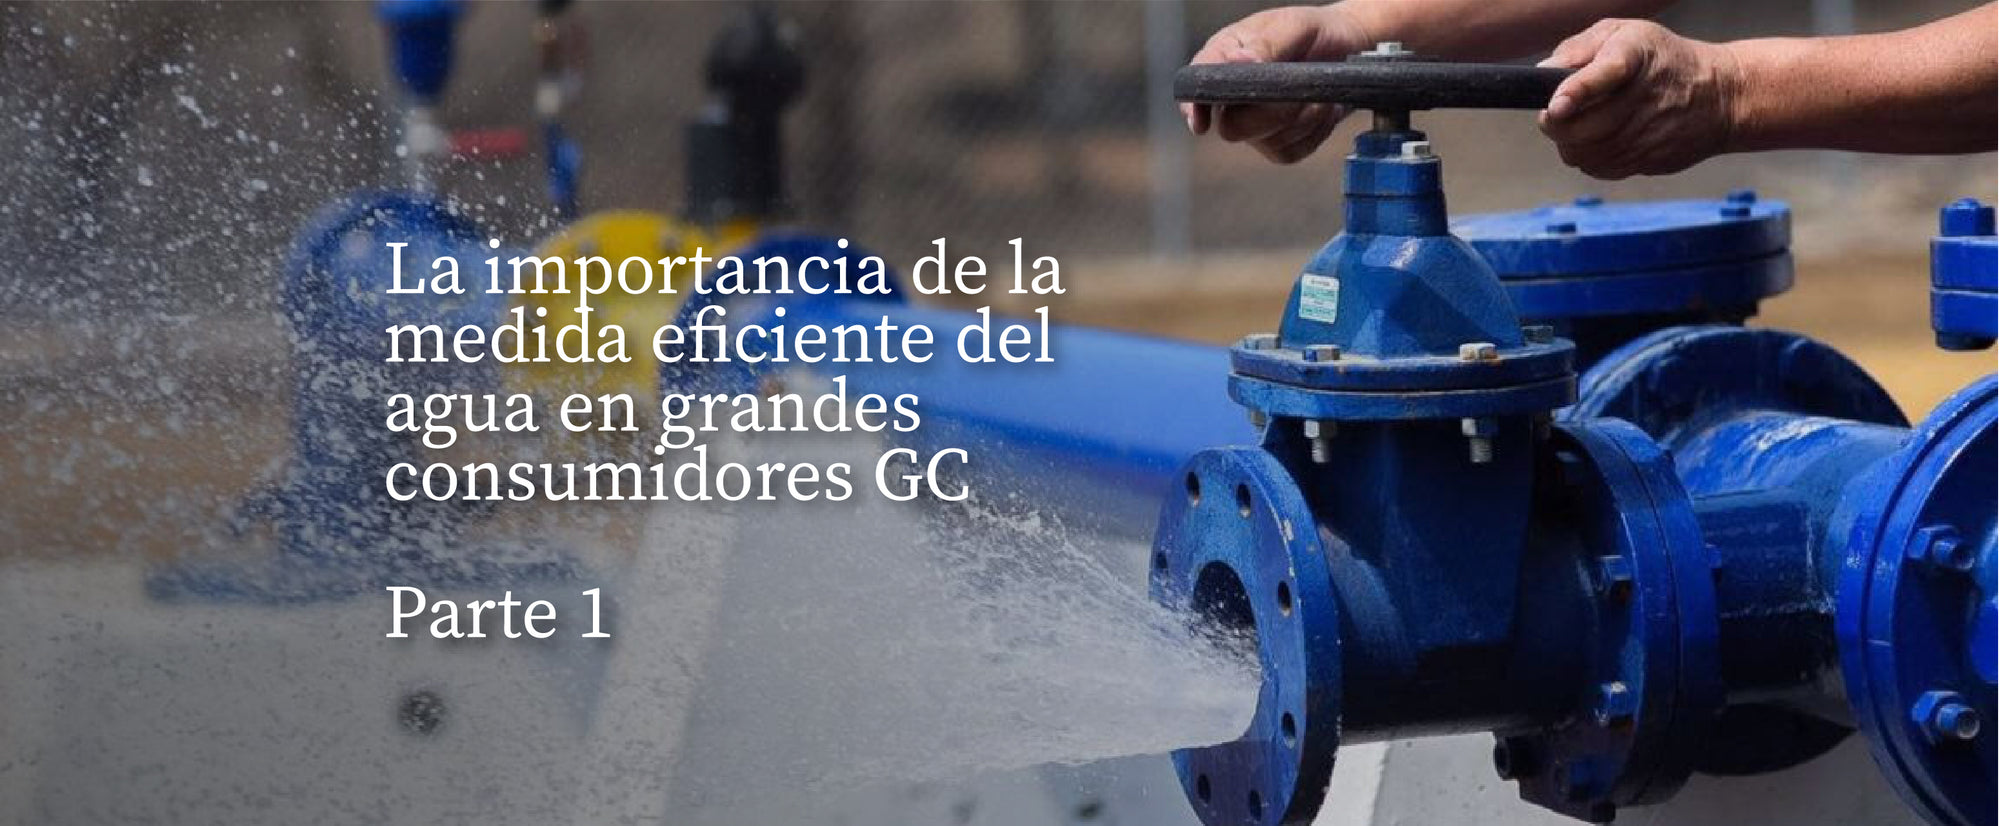 La importancia de la medida eficiente del agua en grandes consumidores GC. Parte #1.